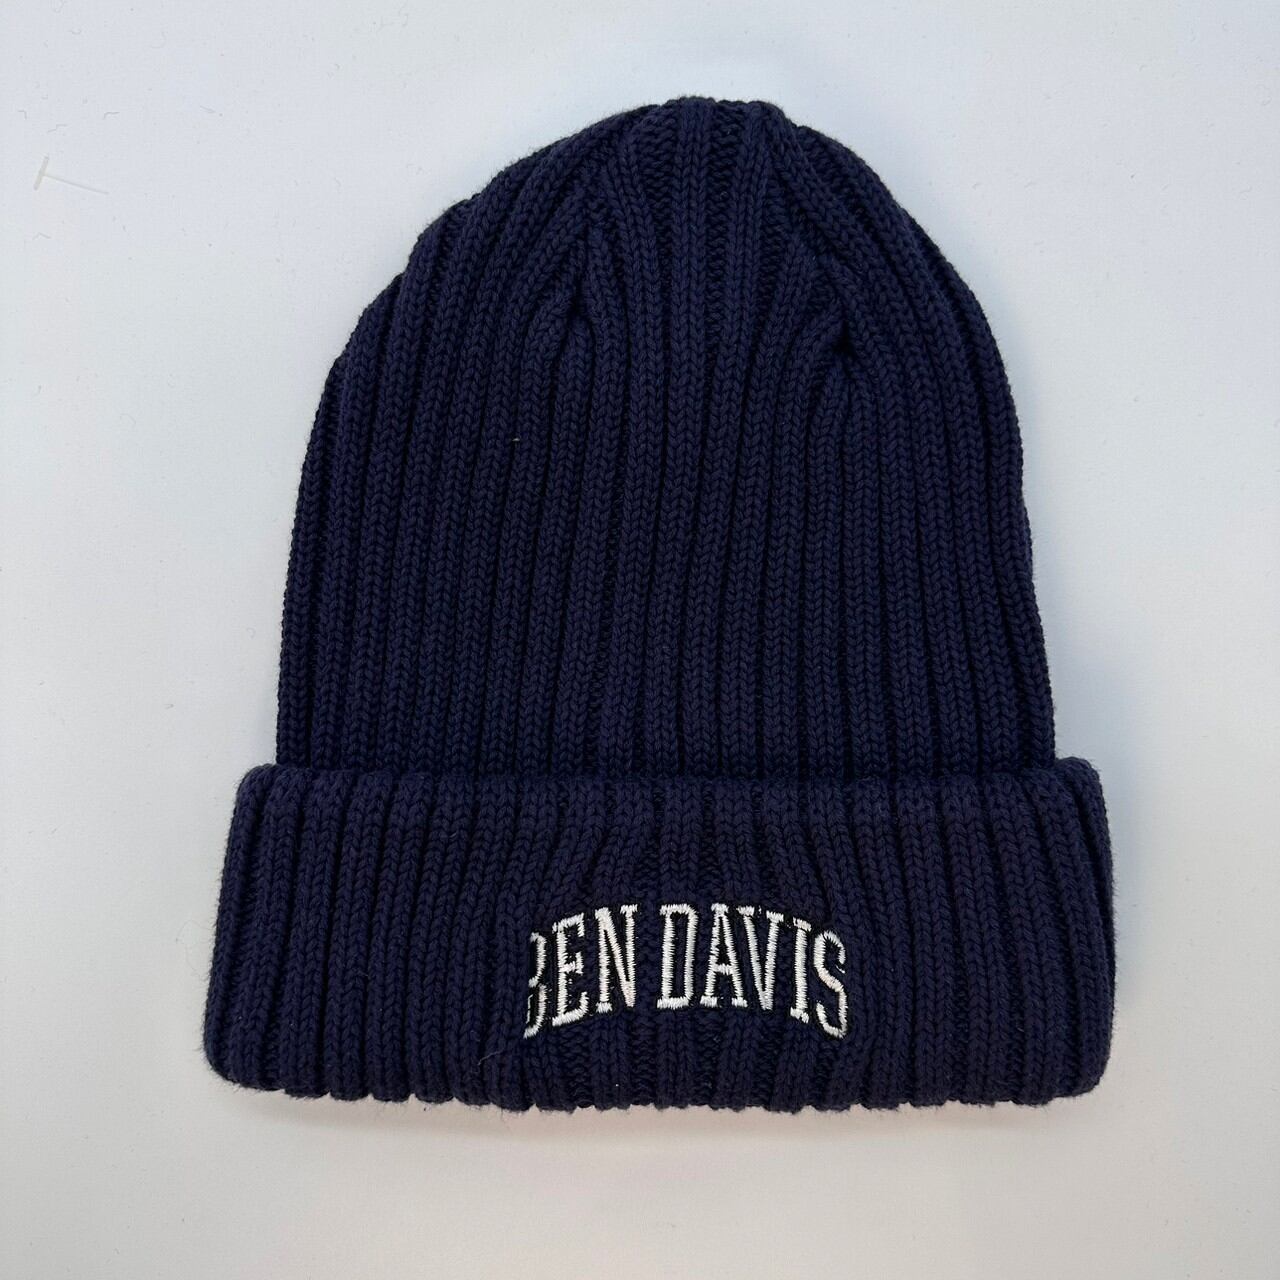 NEN DAVIS/ベンデイビス ニット帽 カレッジロゴ ネイビー/ホワイト